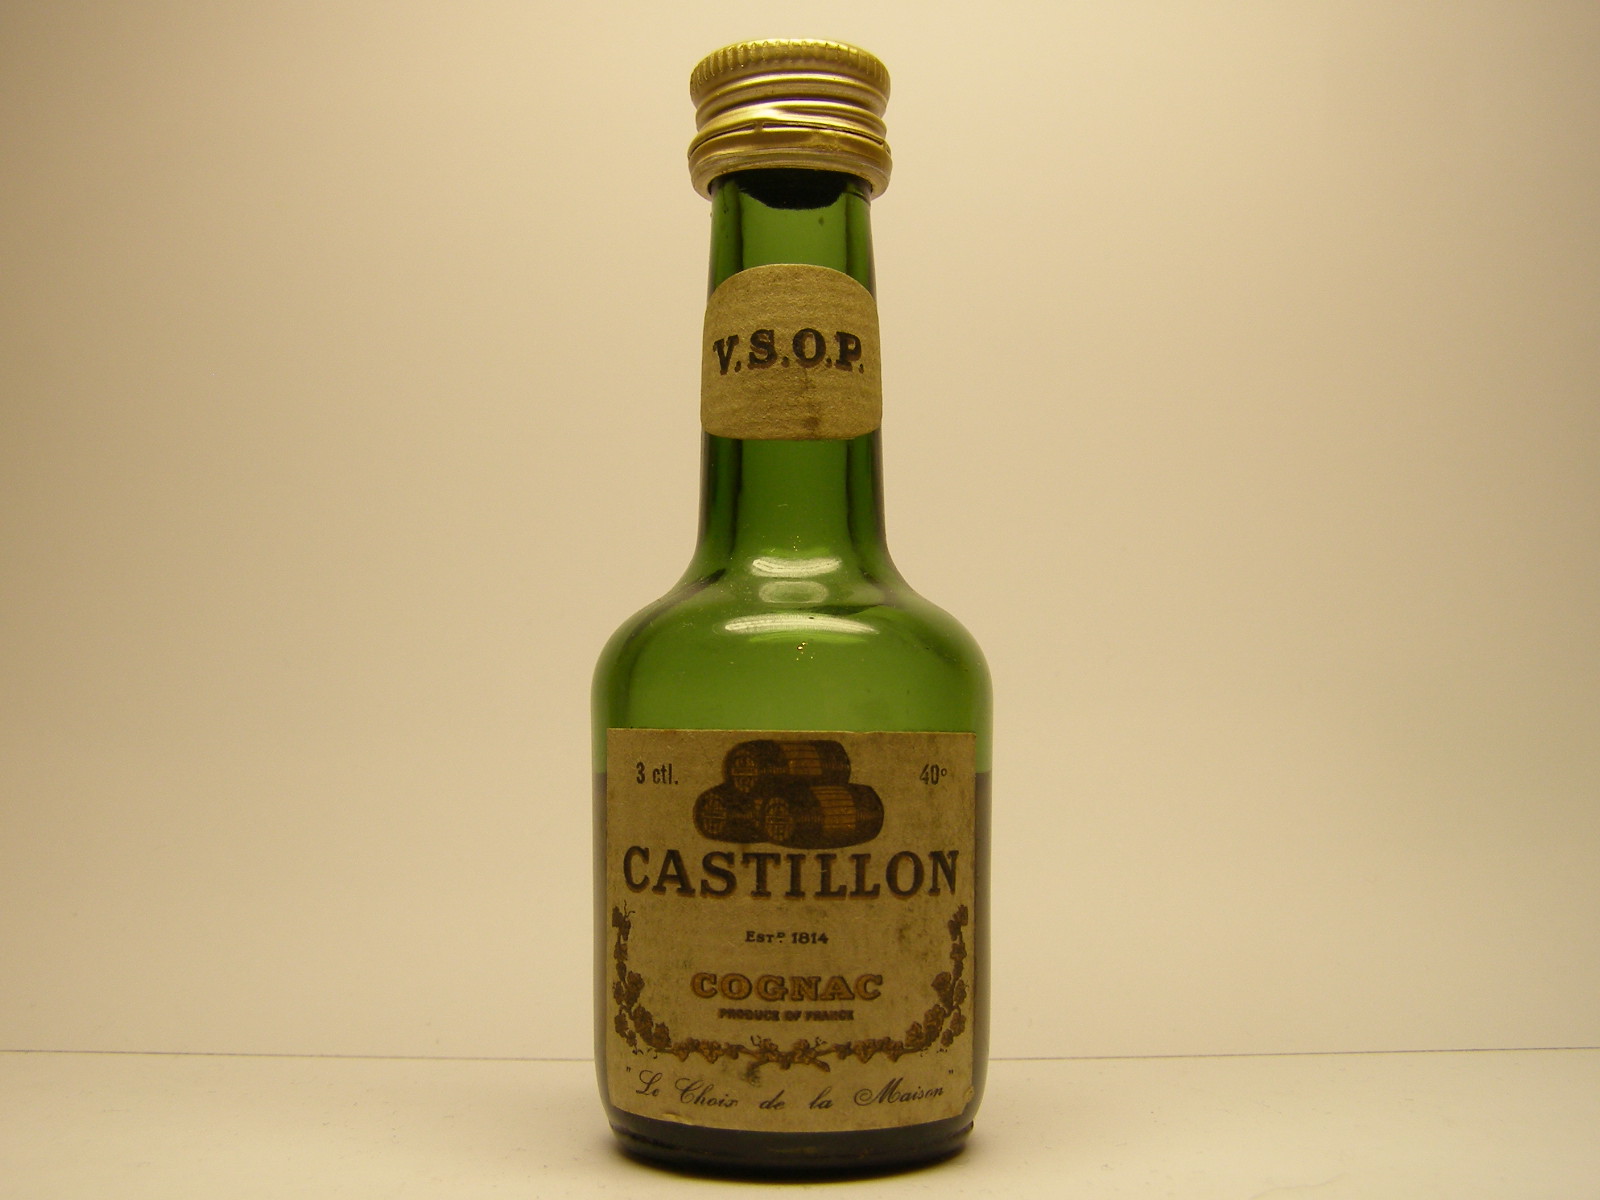 CASTILLON V.S.O.P. Cognac